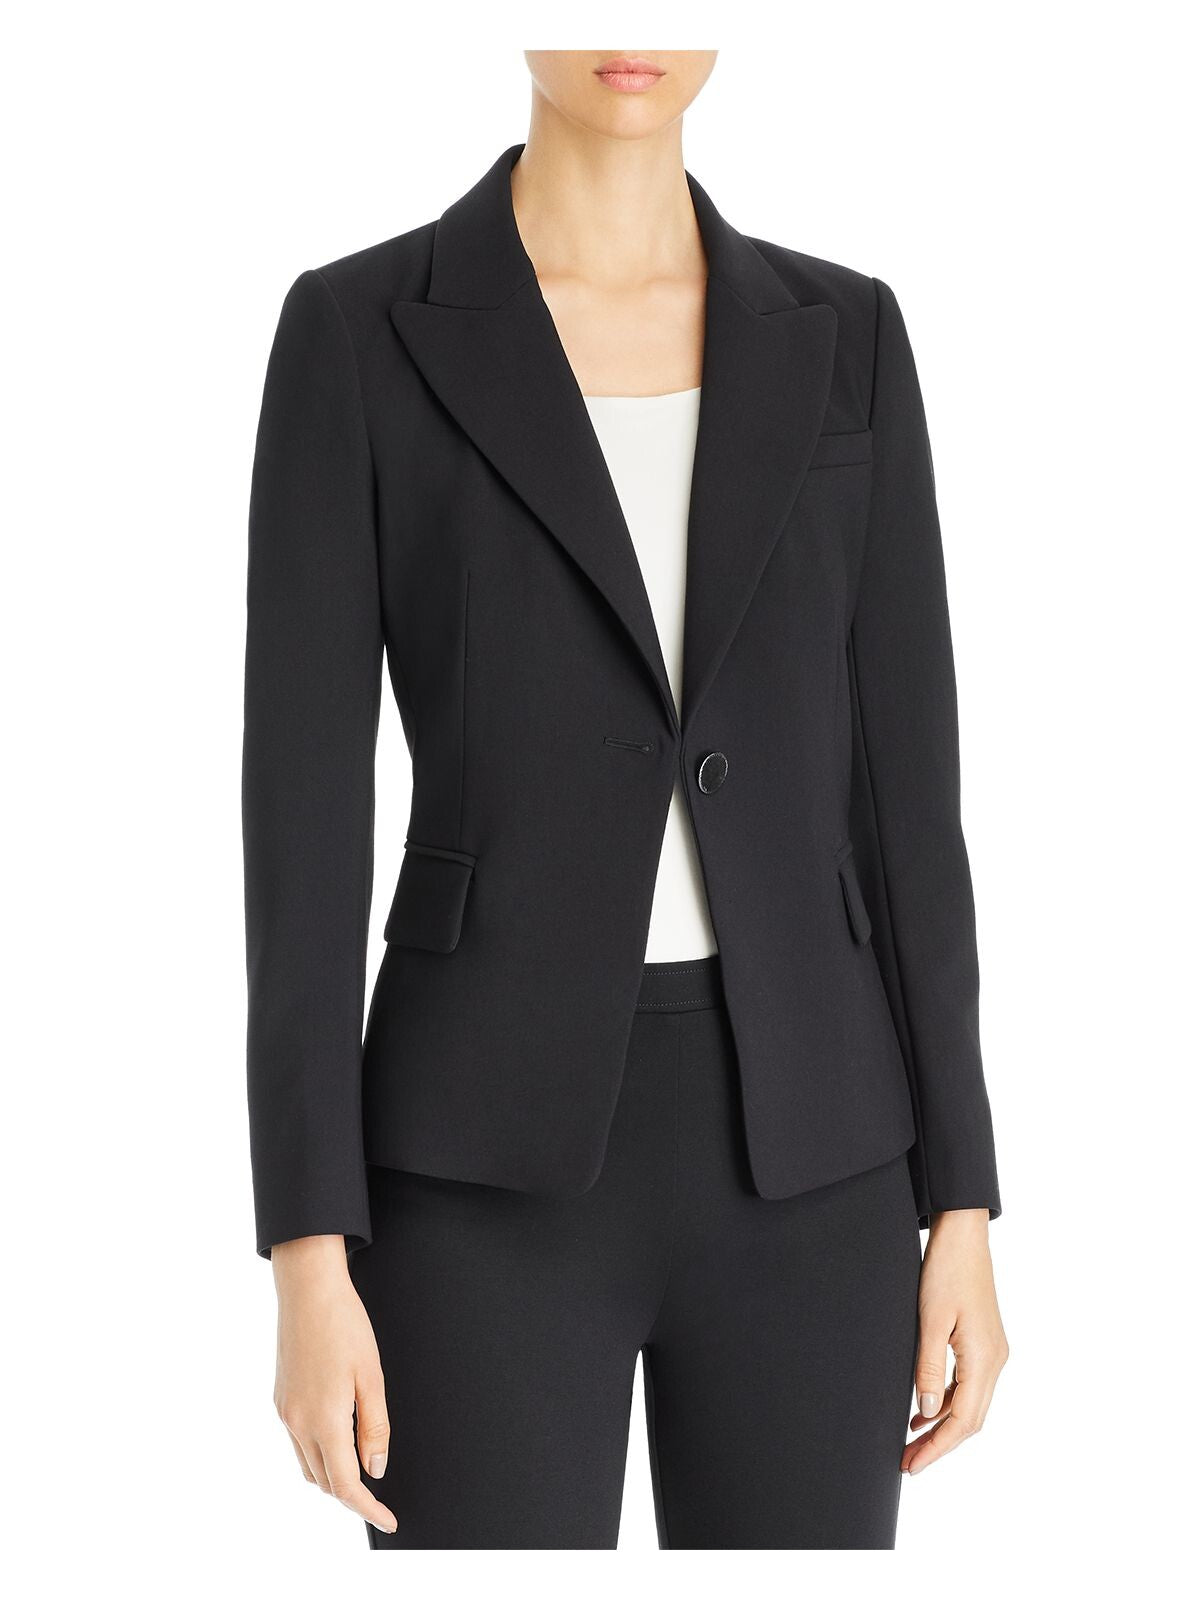 KOBI HALPERIN Womens Black Wear To Work Blazer Jacket XL